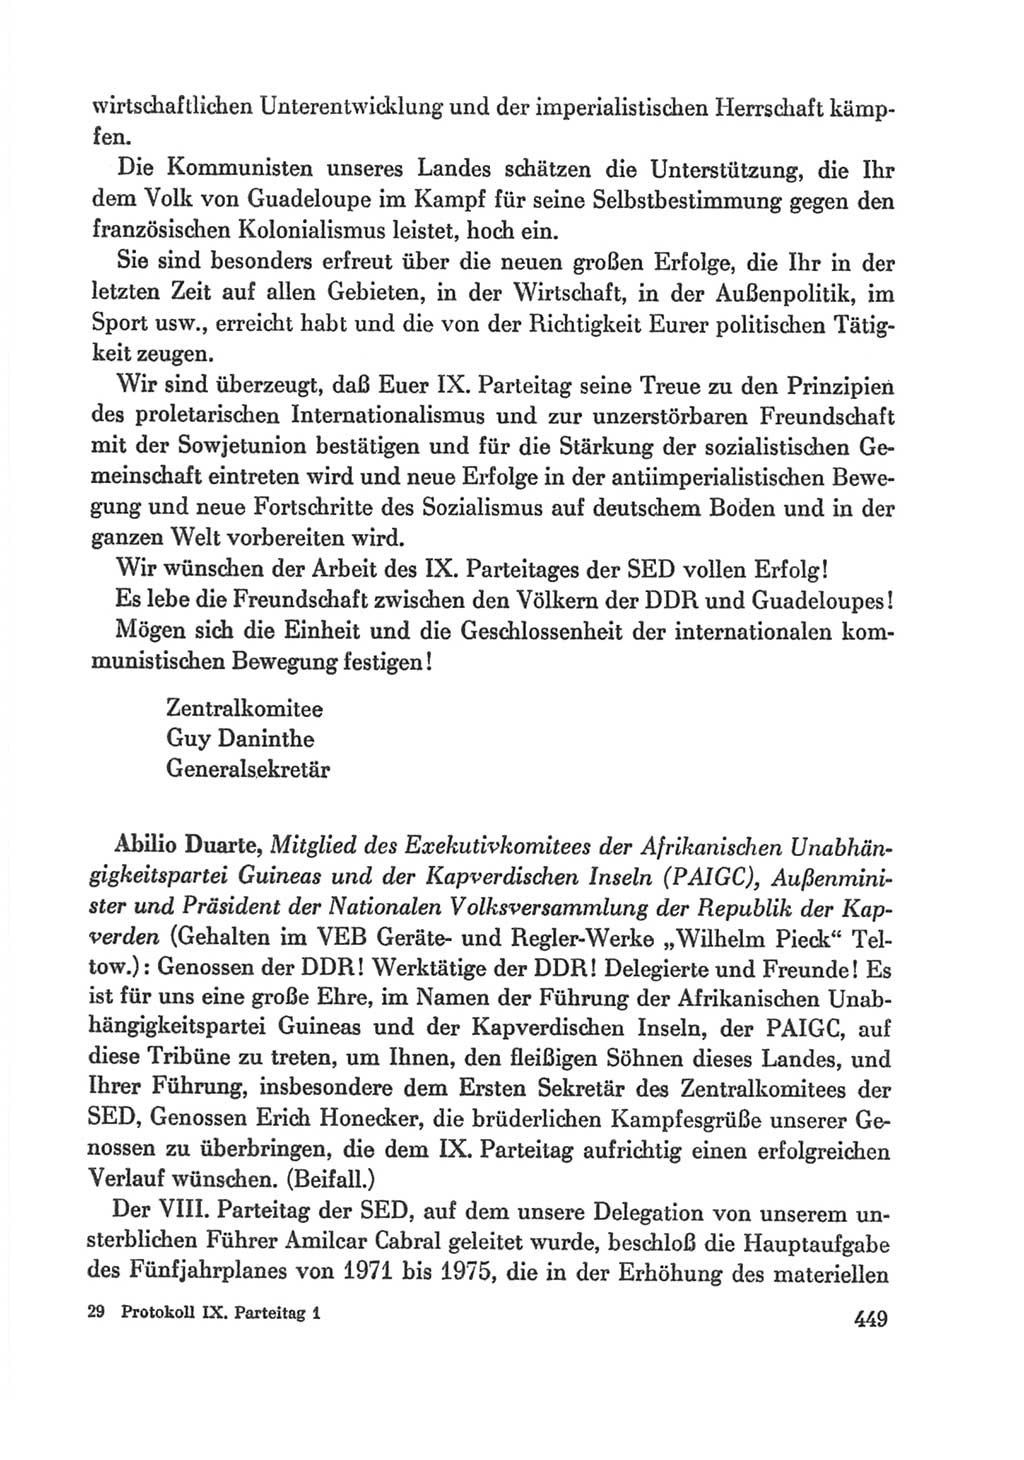 Protokoll der Verhandlungen des Ⅸ. Parteitages der Sozialistischen Einheitspartei Deutschlands (SED) [Deutsche Demokratische Republik (DDR)] 1976, Band 1, Seite 449 (Prot. Verh. Ⅸ. PT SED DDR 1976, Bd. 1, S. 449)